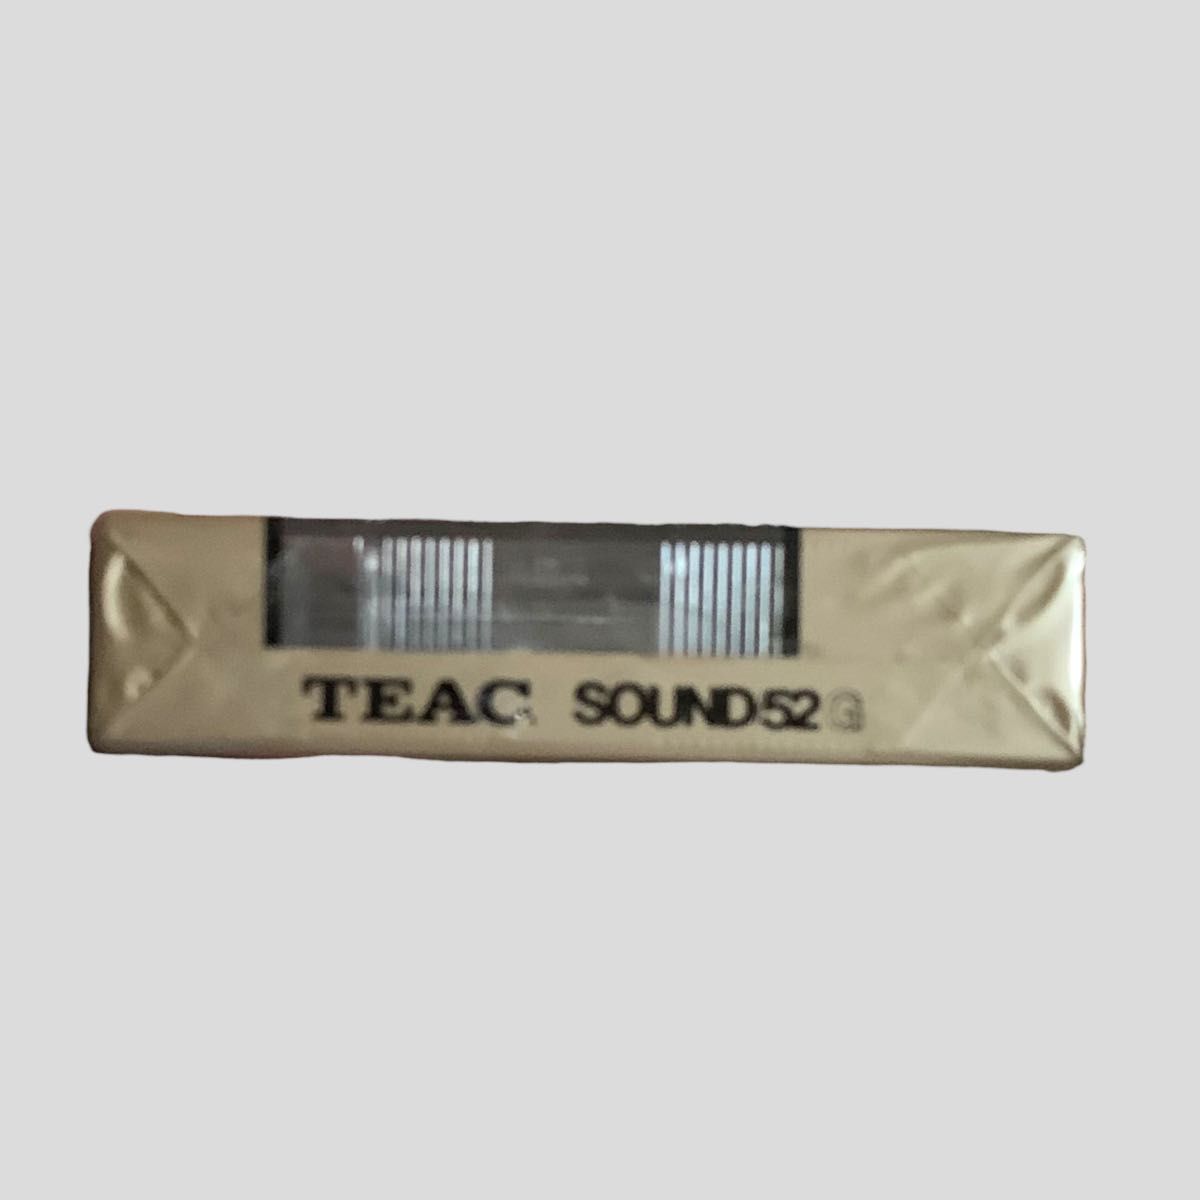 新品 カセットテープ TEAC ティアック オープンリール柄 ノーマルポジション typeⅠ SOUND52 エクストラノーマル